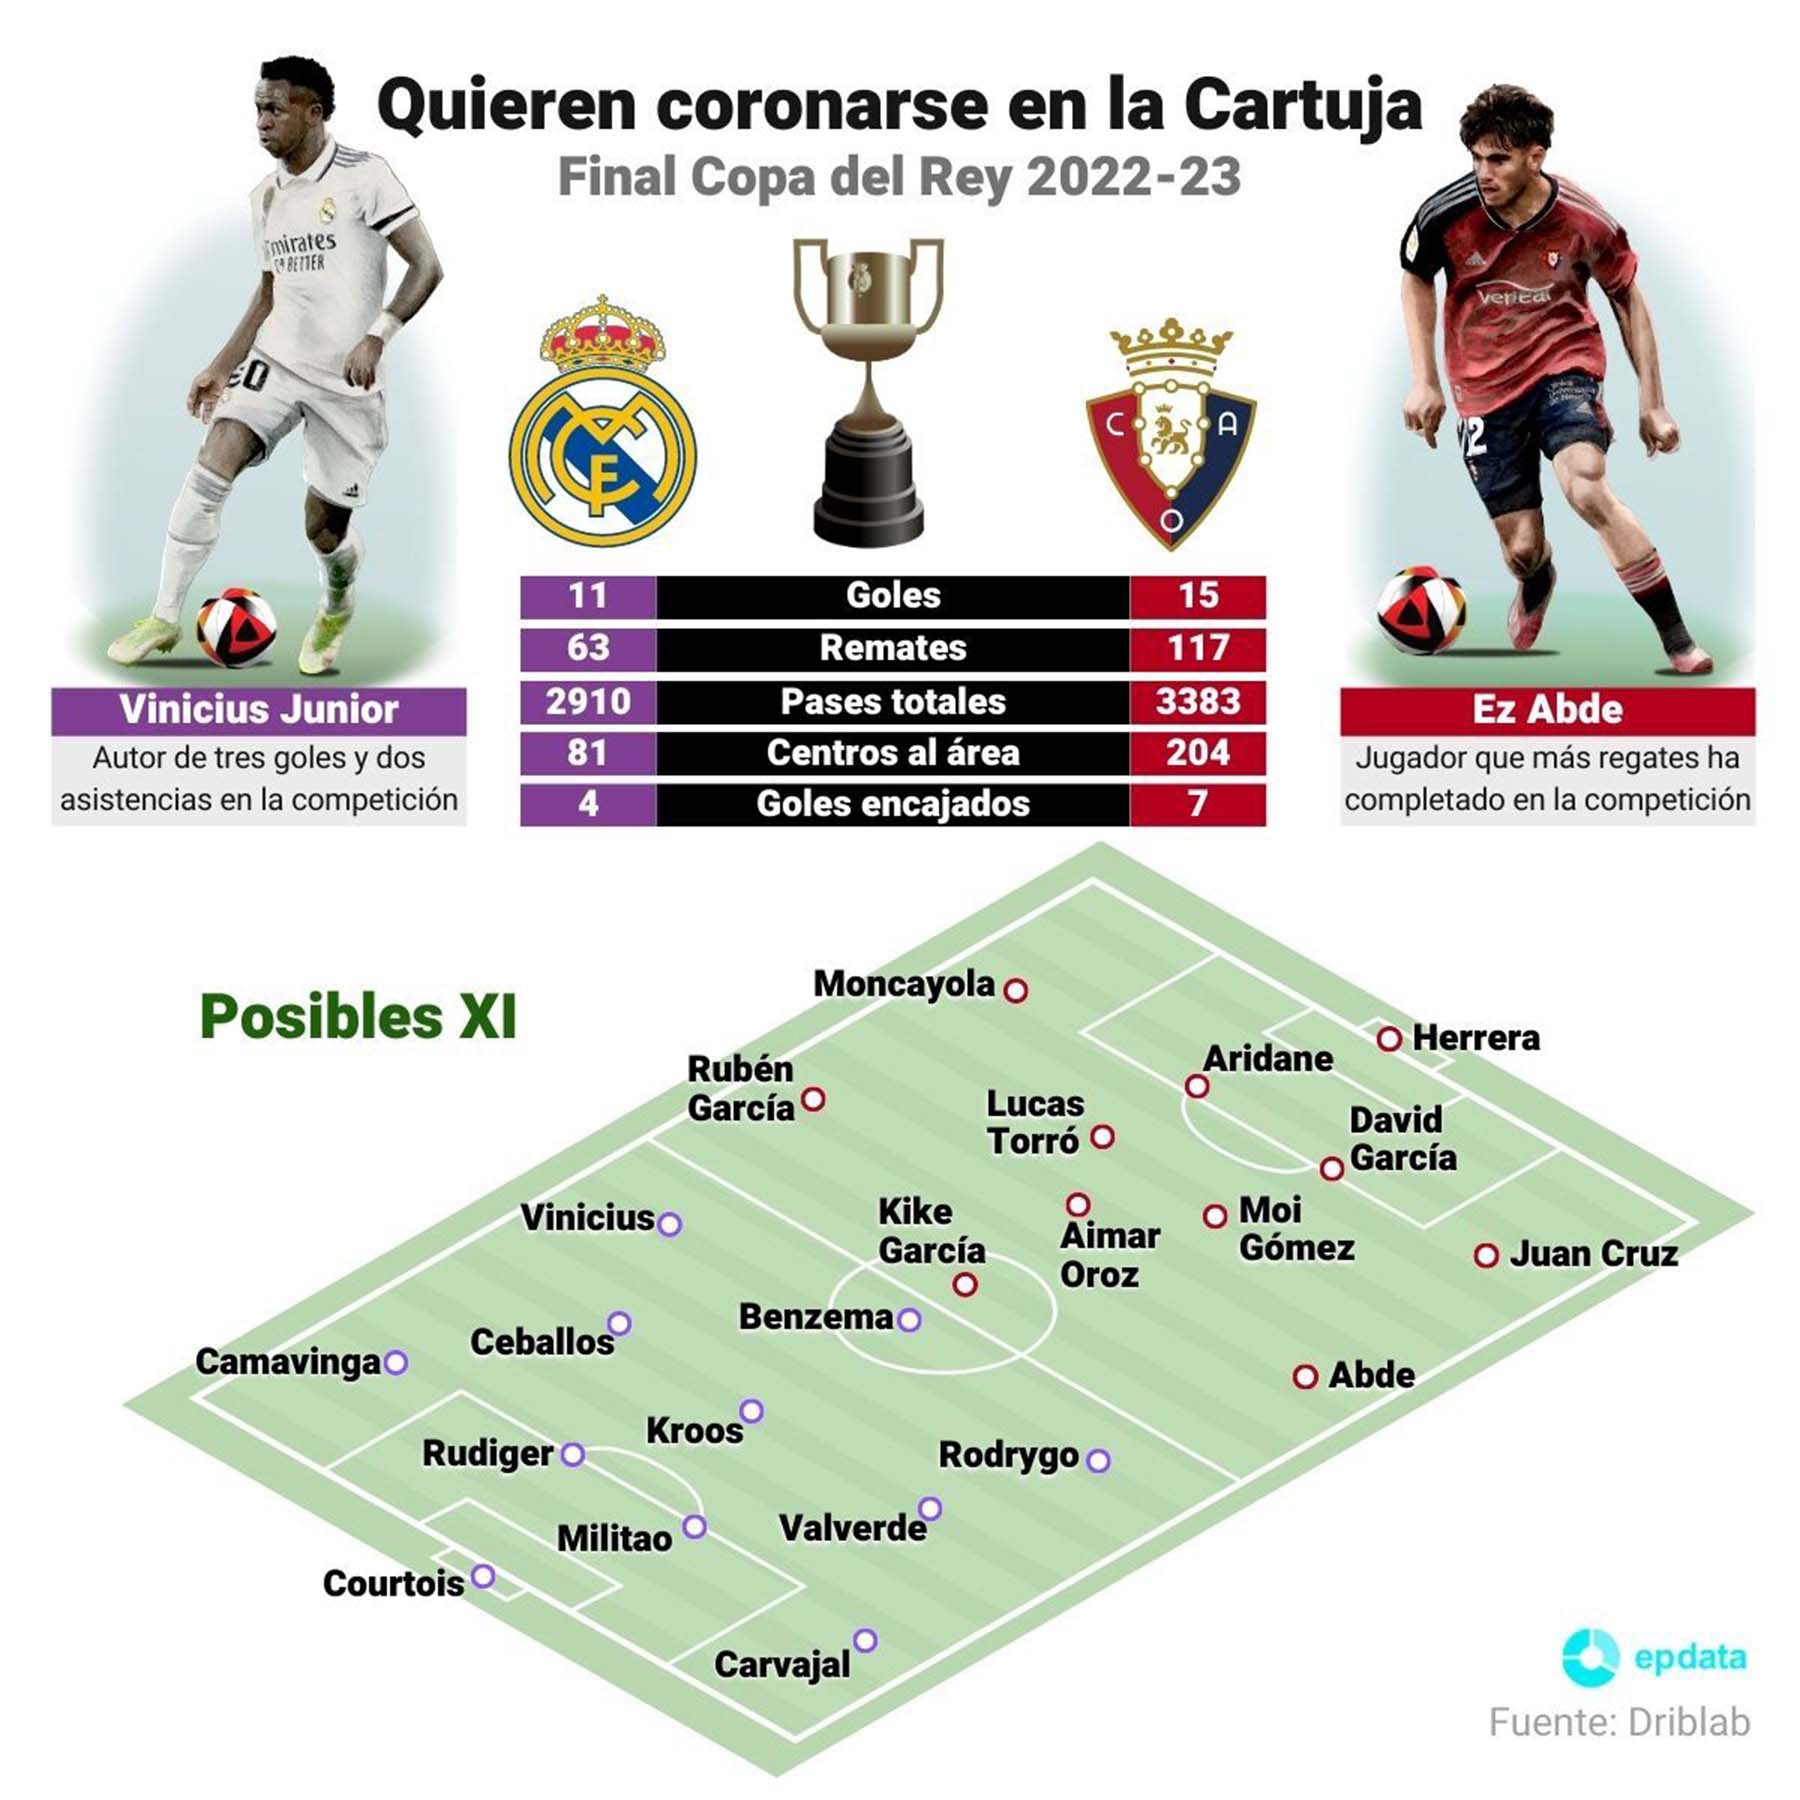 Infografía con principales estadísticas sobre el Real Madrid y Osasuna hasta la final de la Copa del Rey 2022-23, que se celebrará el 6 de mayo de 2023
Europa Press / Europa Press
05/5/2023